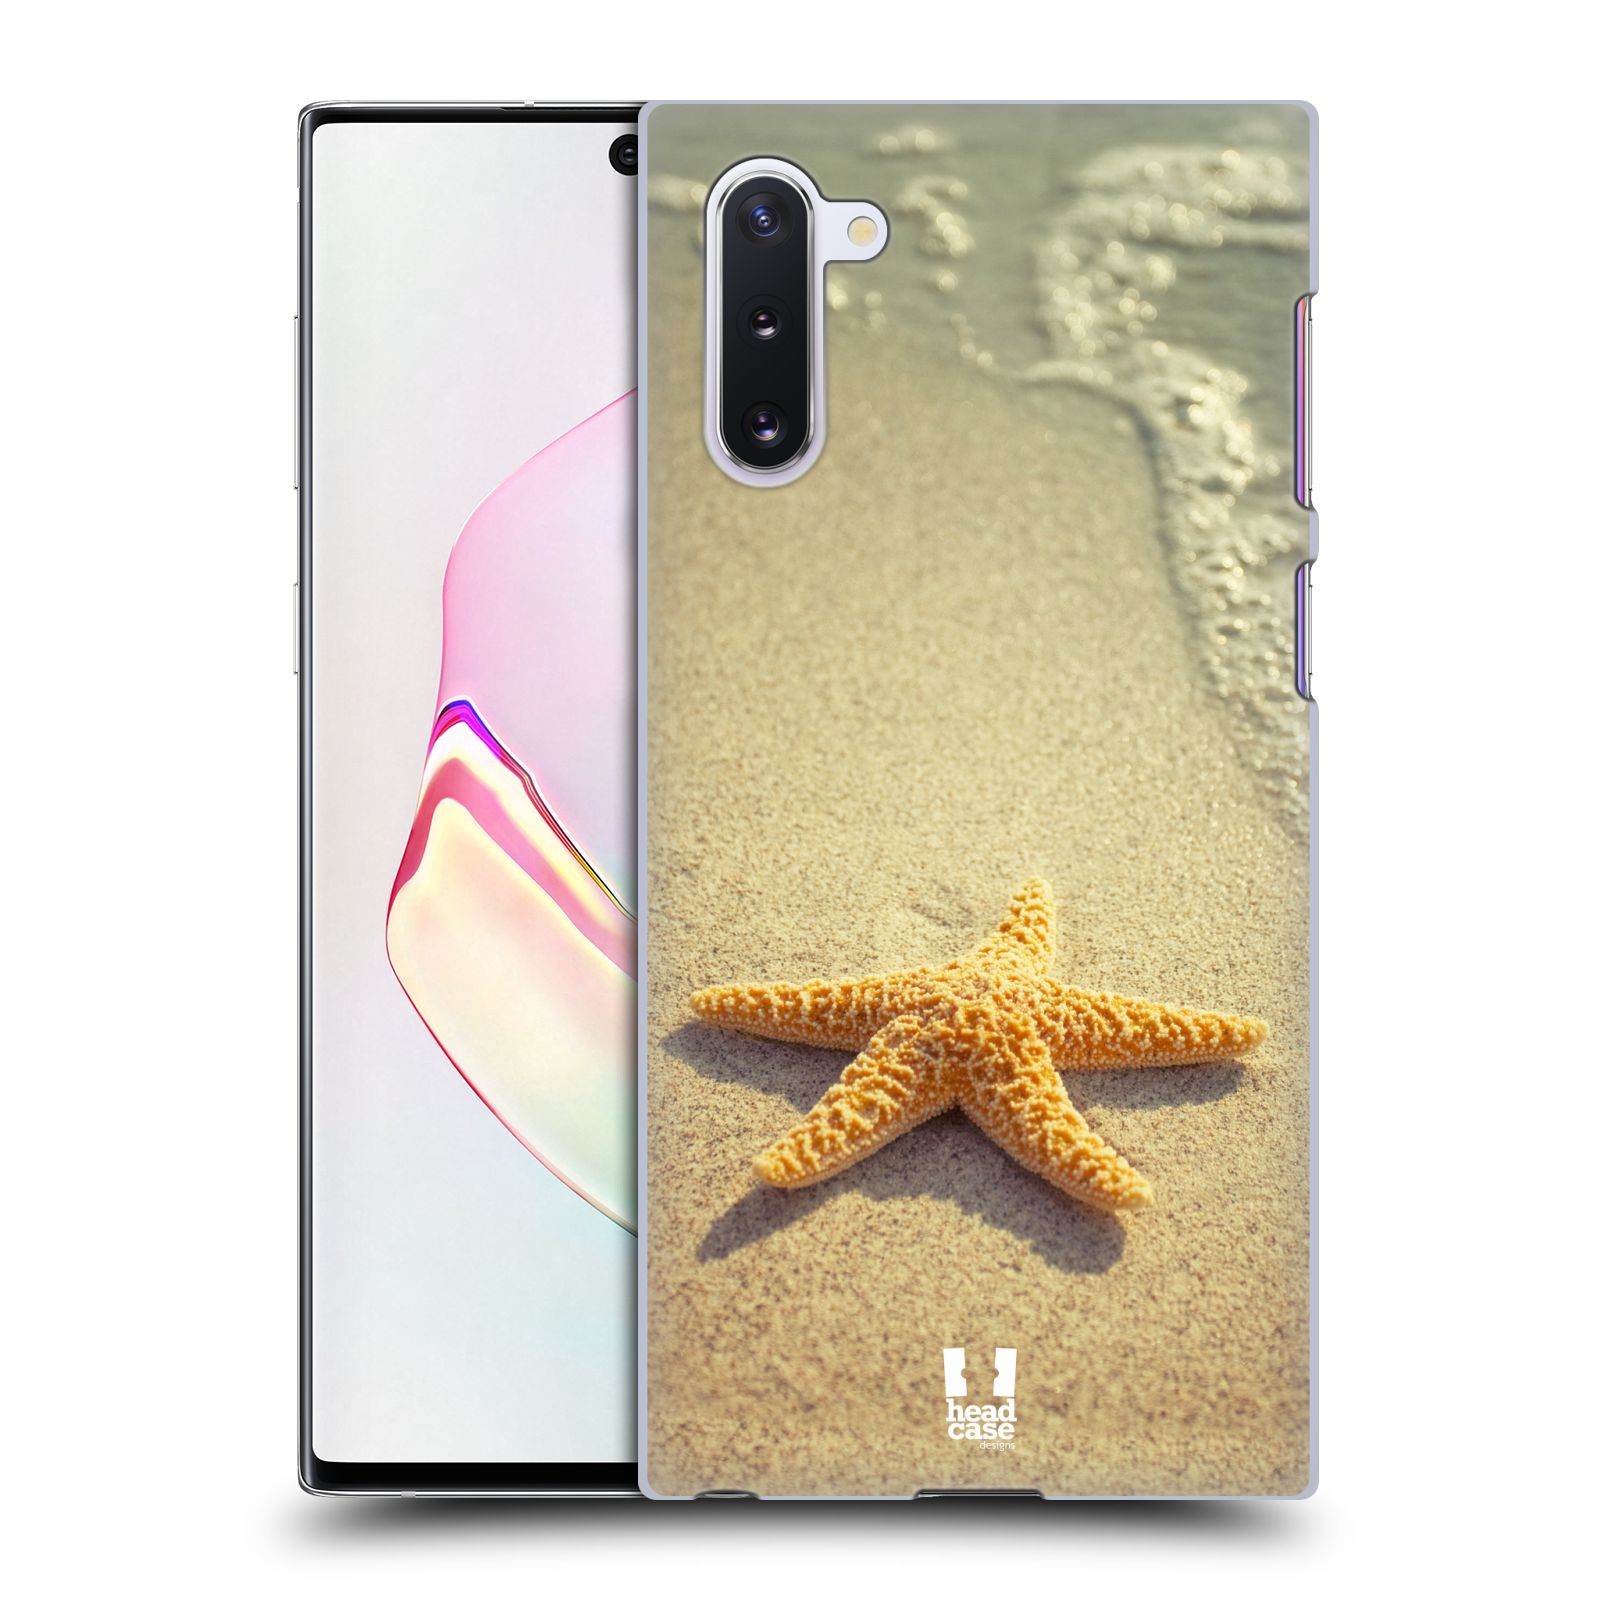 Pouzdro na mobil Samsung Galaxy Note 10 - HEAD CASE - vzor slavná zvířata foto hvězda na břehu